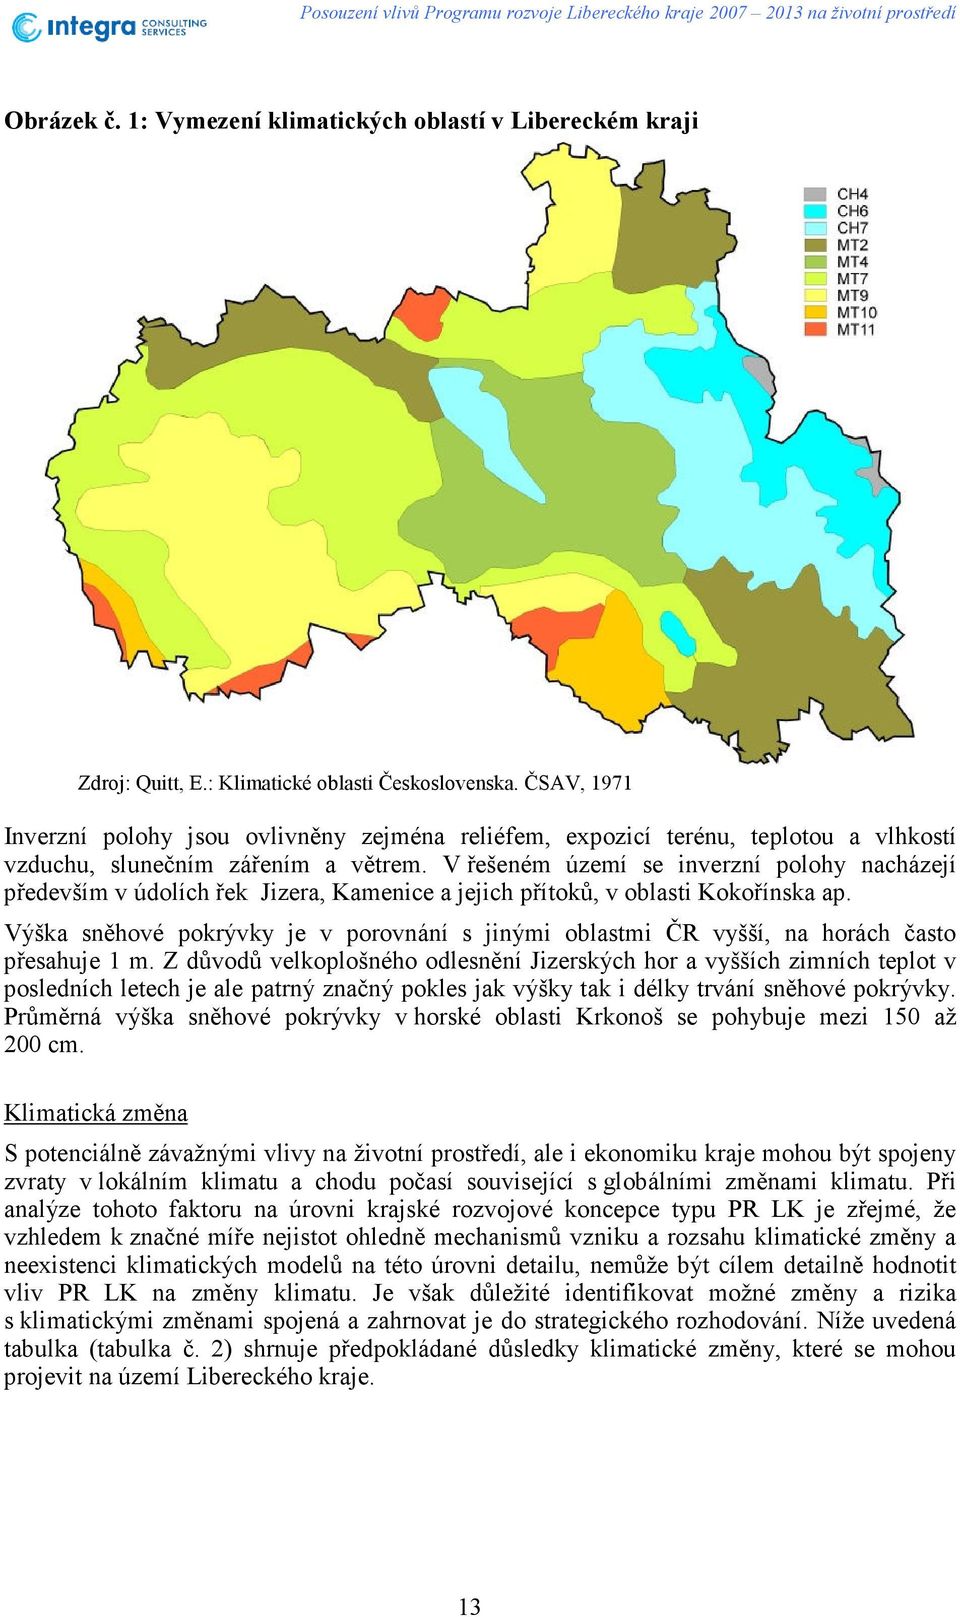 V řešeném území se inverzní polohy nacházejí především v údolích řek Jizera, Kamenice a jejich přítoků, v oblasti Kokořínska ap.